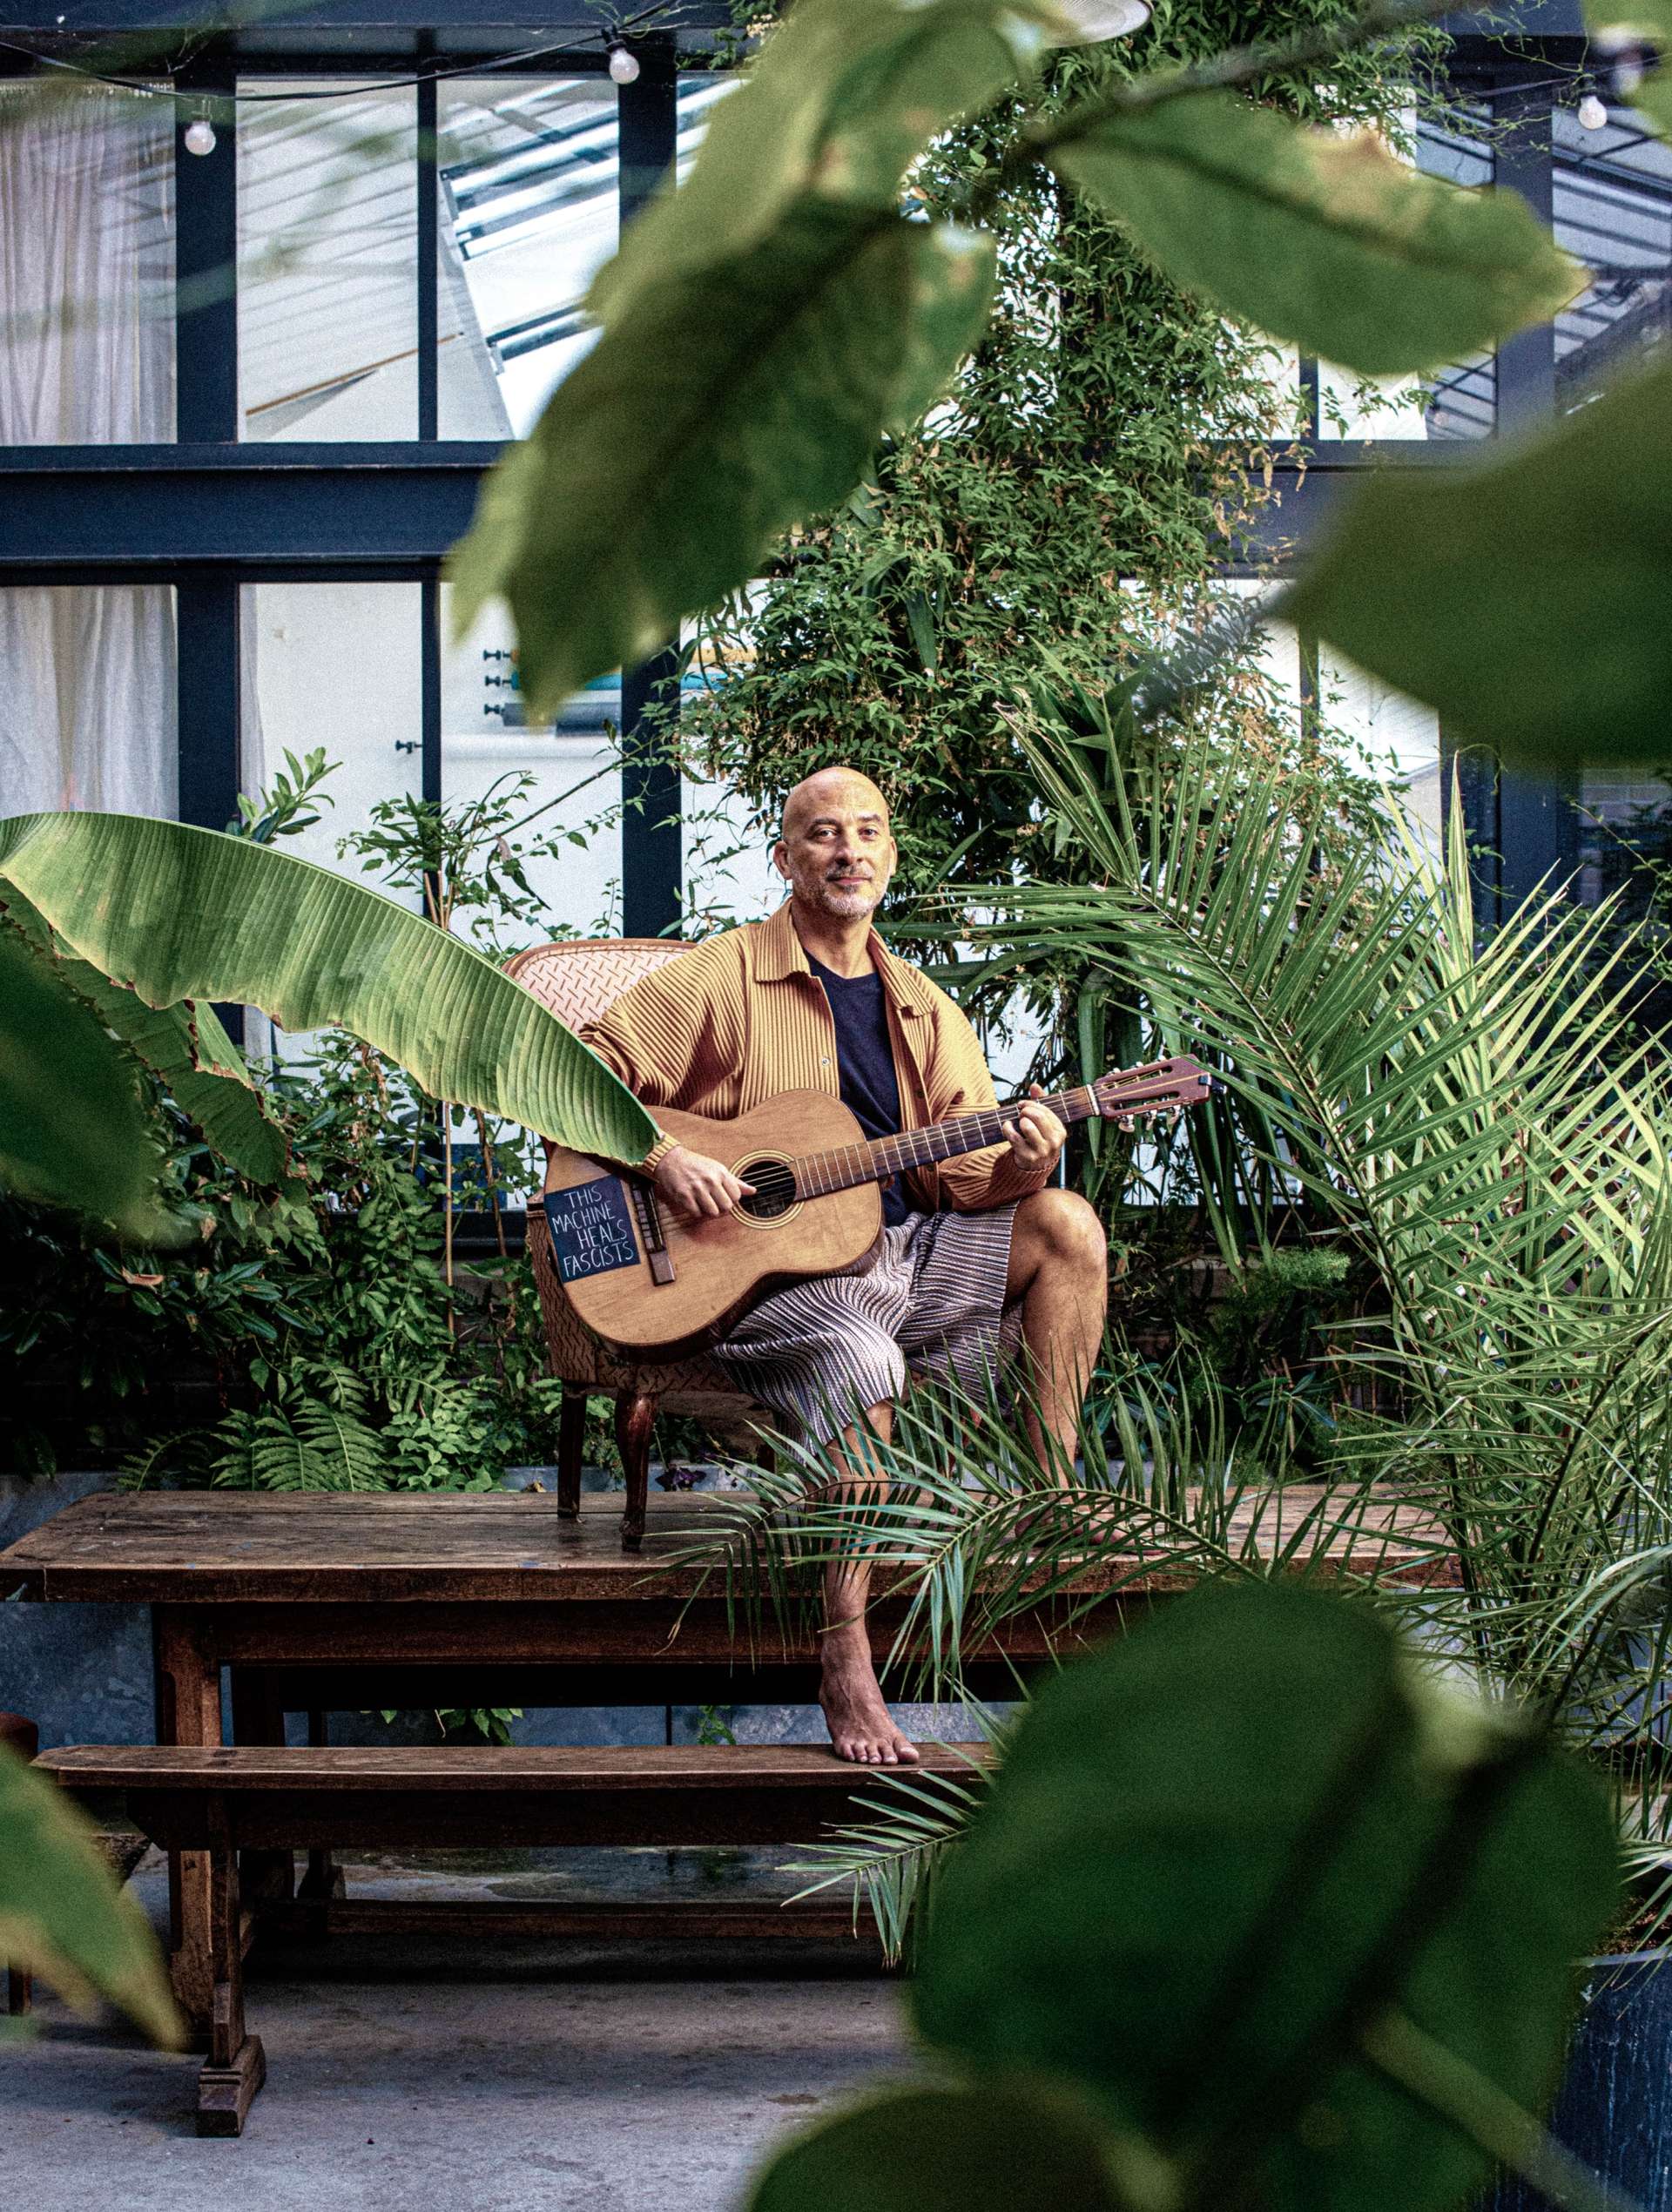 Assis sur une table en bois, guitare à la main, Lucas Santtana pose face à l'objectif au milieu d'une végétation luxuriante de type jungle urbaine d'intérieur. 